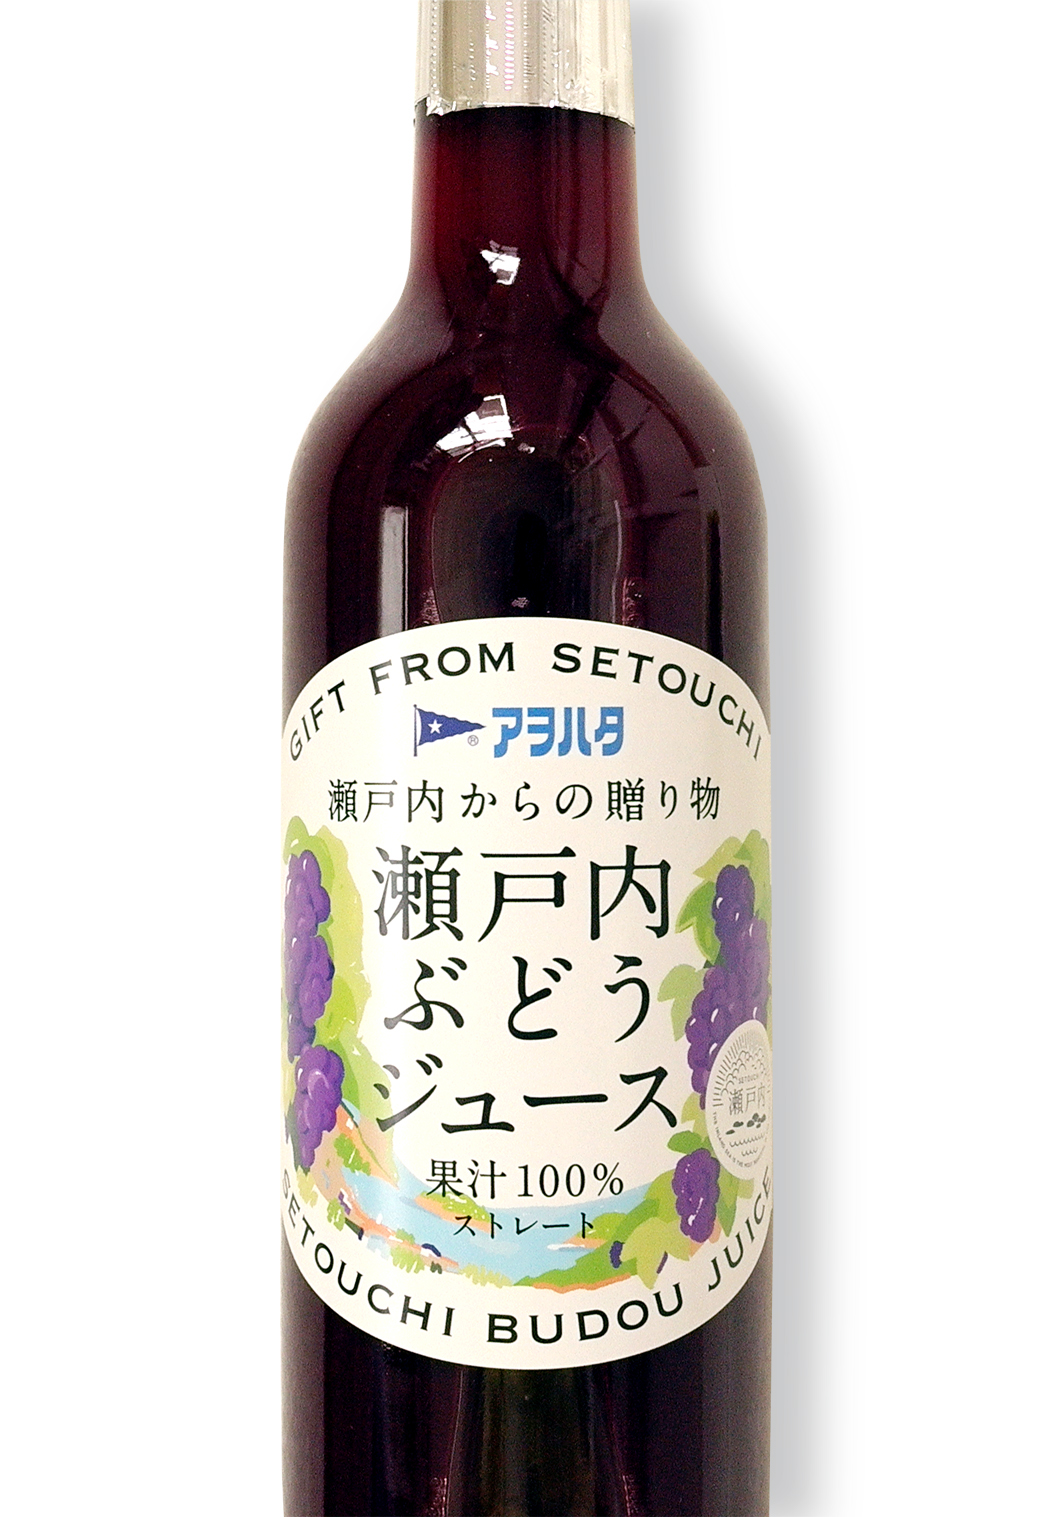 日本设计 | 包装 LOGO 标志 食品 美食 饮品 酒